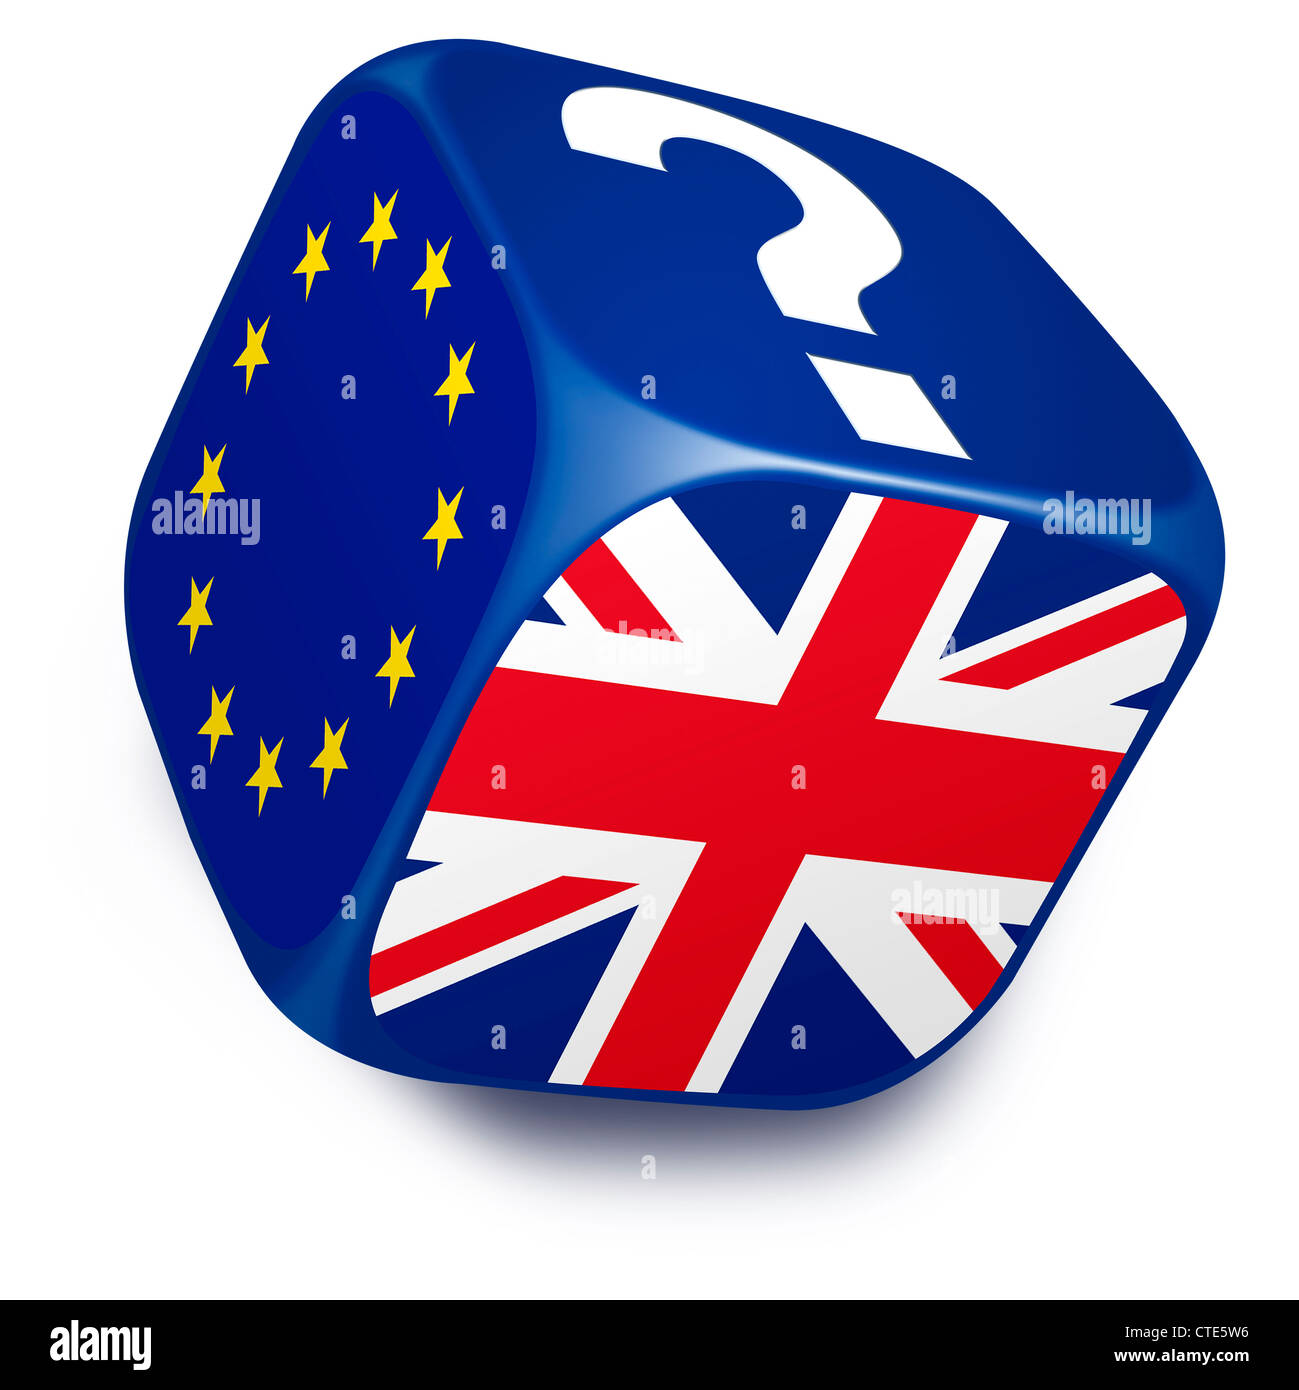 Dadi con la bandiera dell'Unione europea, Regno Unito bandiera e un punto interrogativo su entrambi i lati Foto Stock